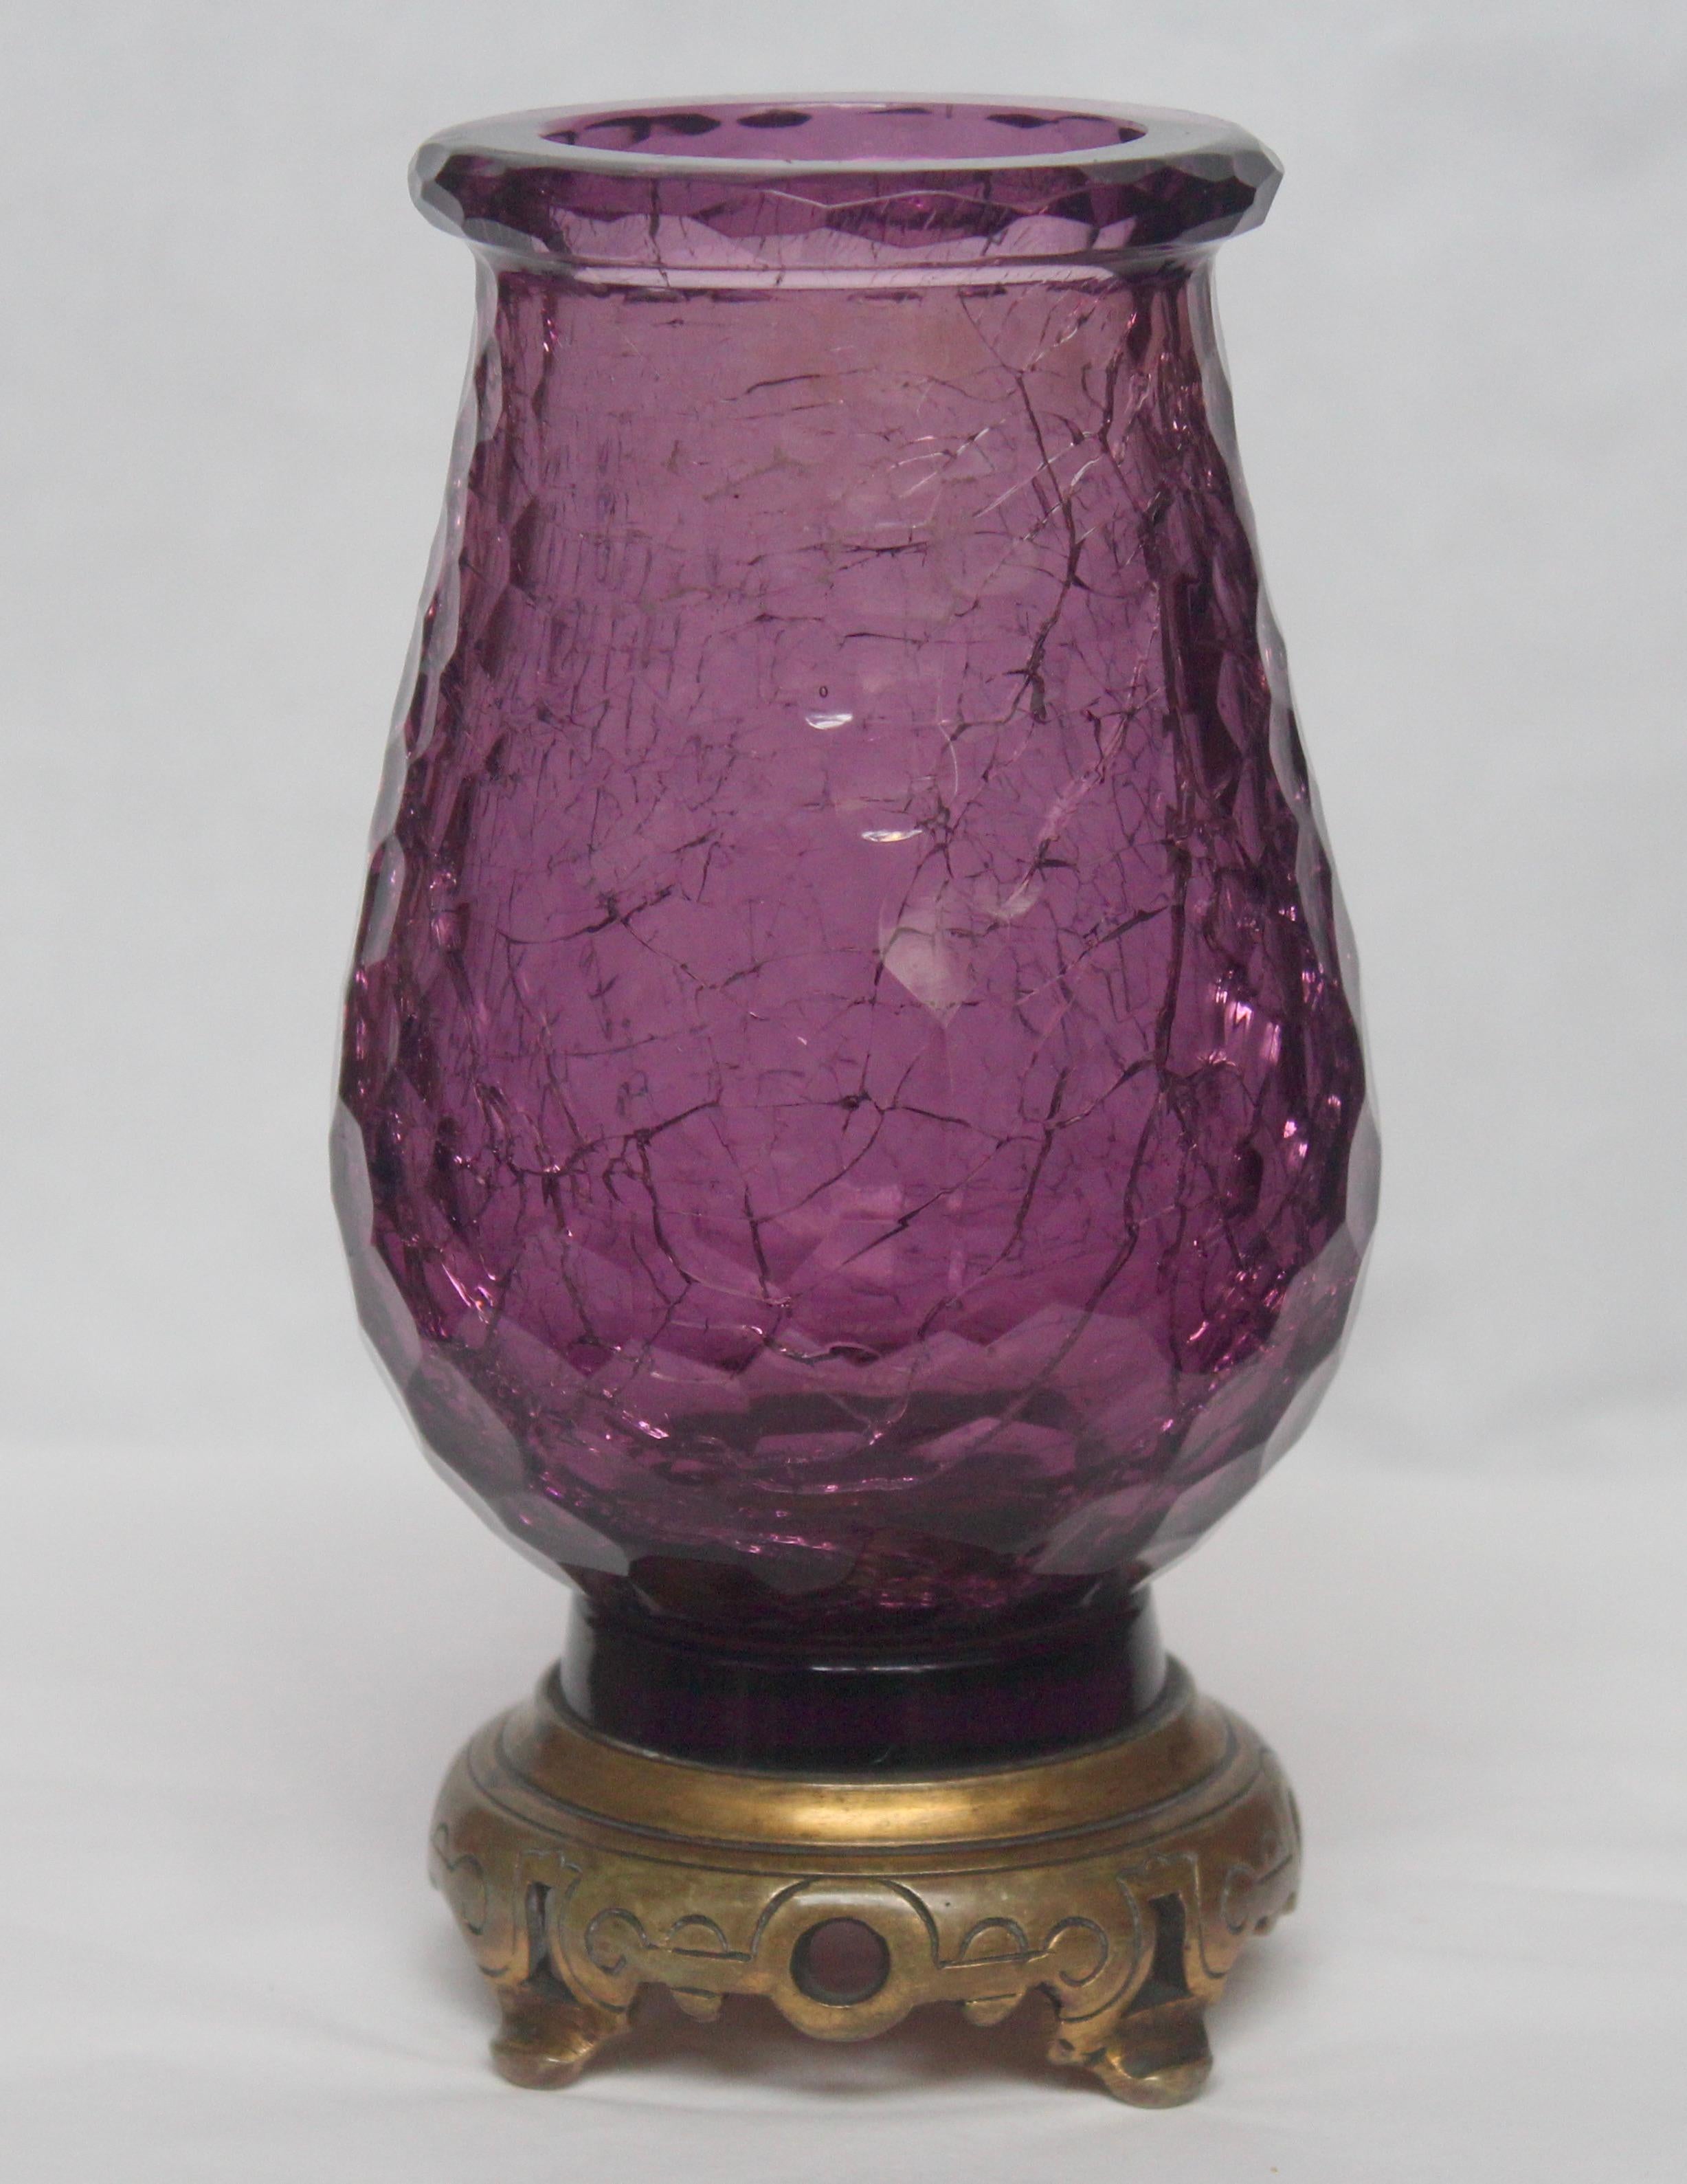 French Japonisme Crackled Baccarat Crystal Vase, Ormolu Mount by Edmond Enot